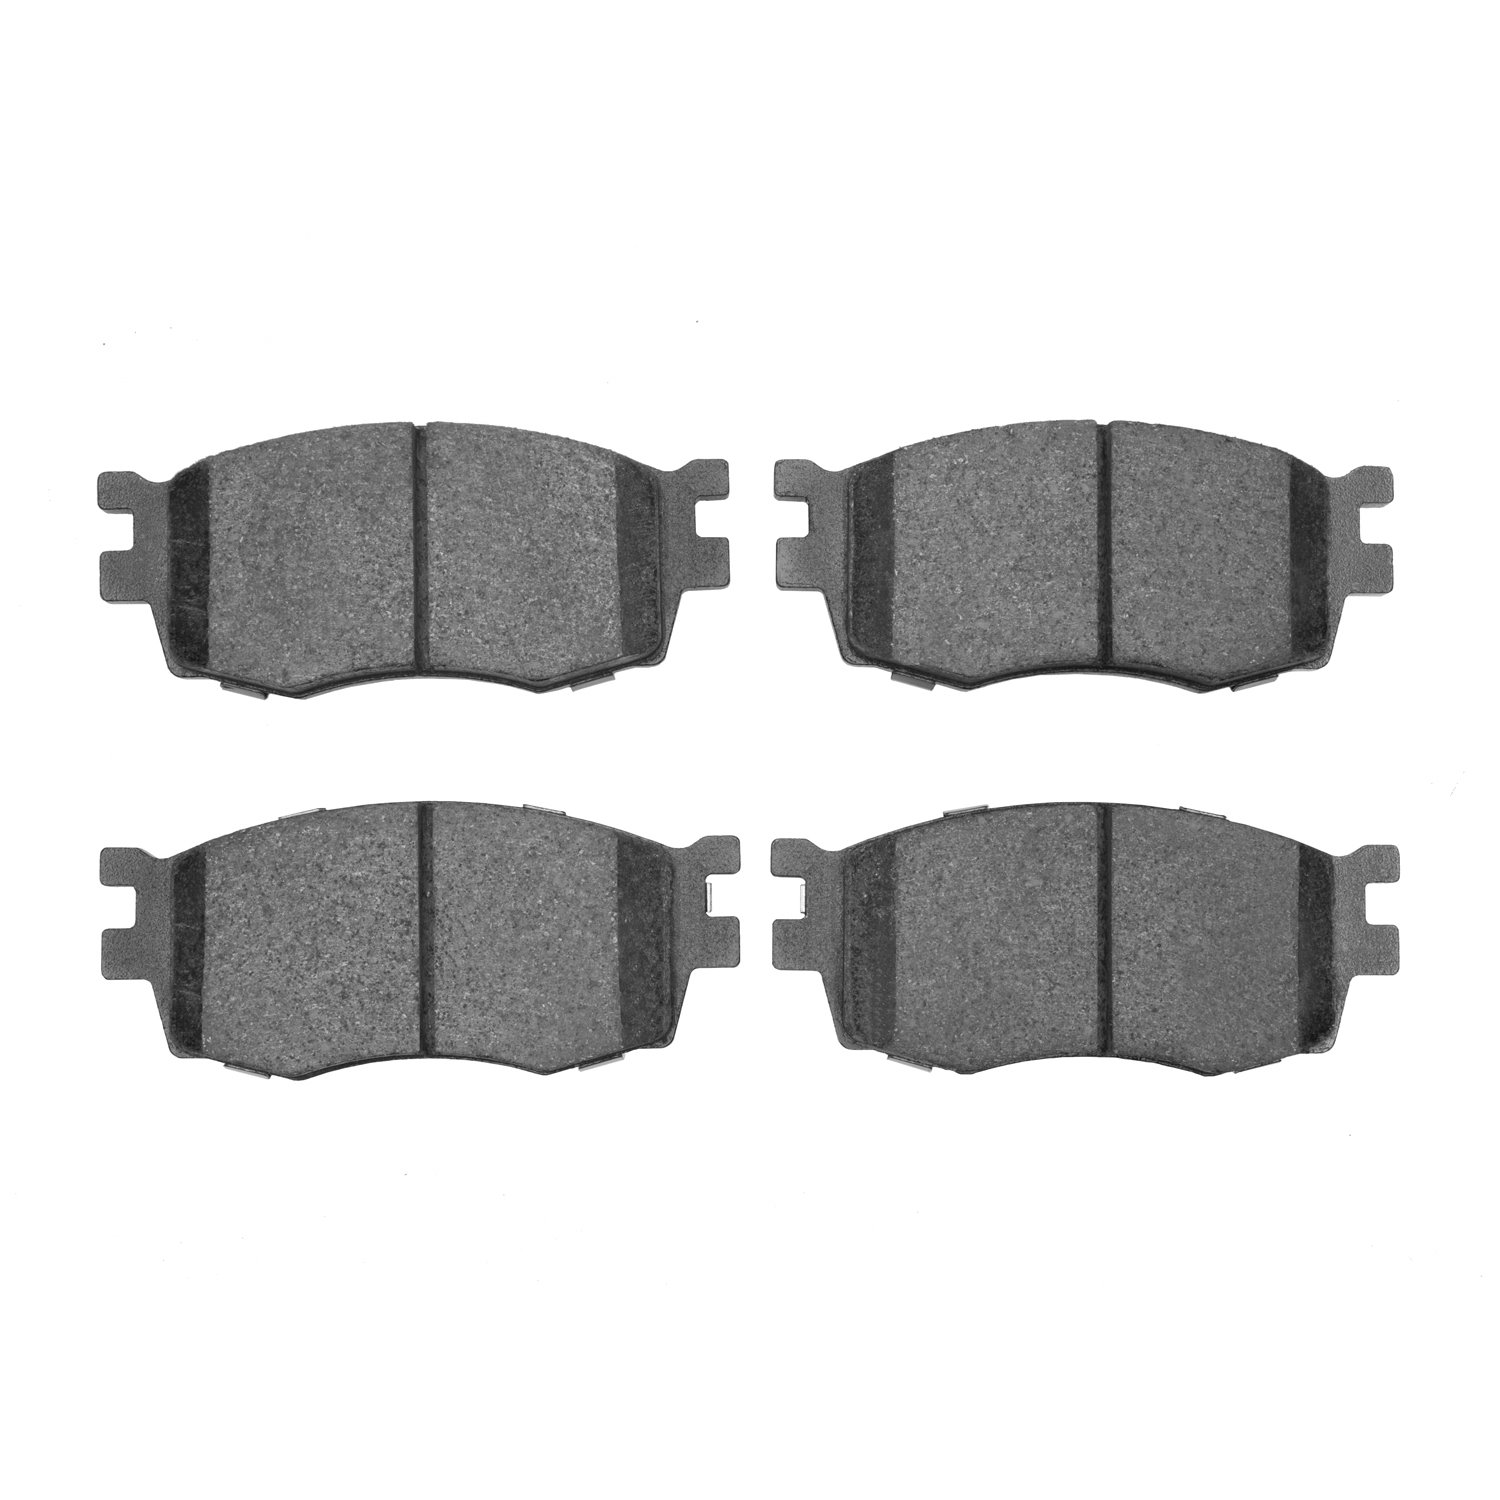 Ceramic Brake Pads, 2006-2012 Fits Multiple Makes/Models, Position: Front